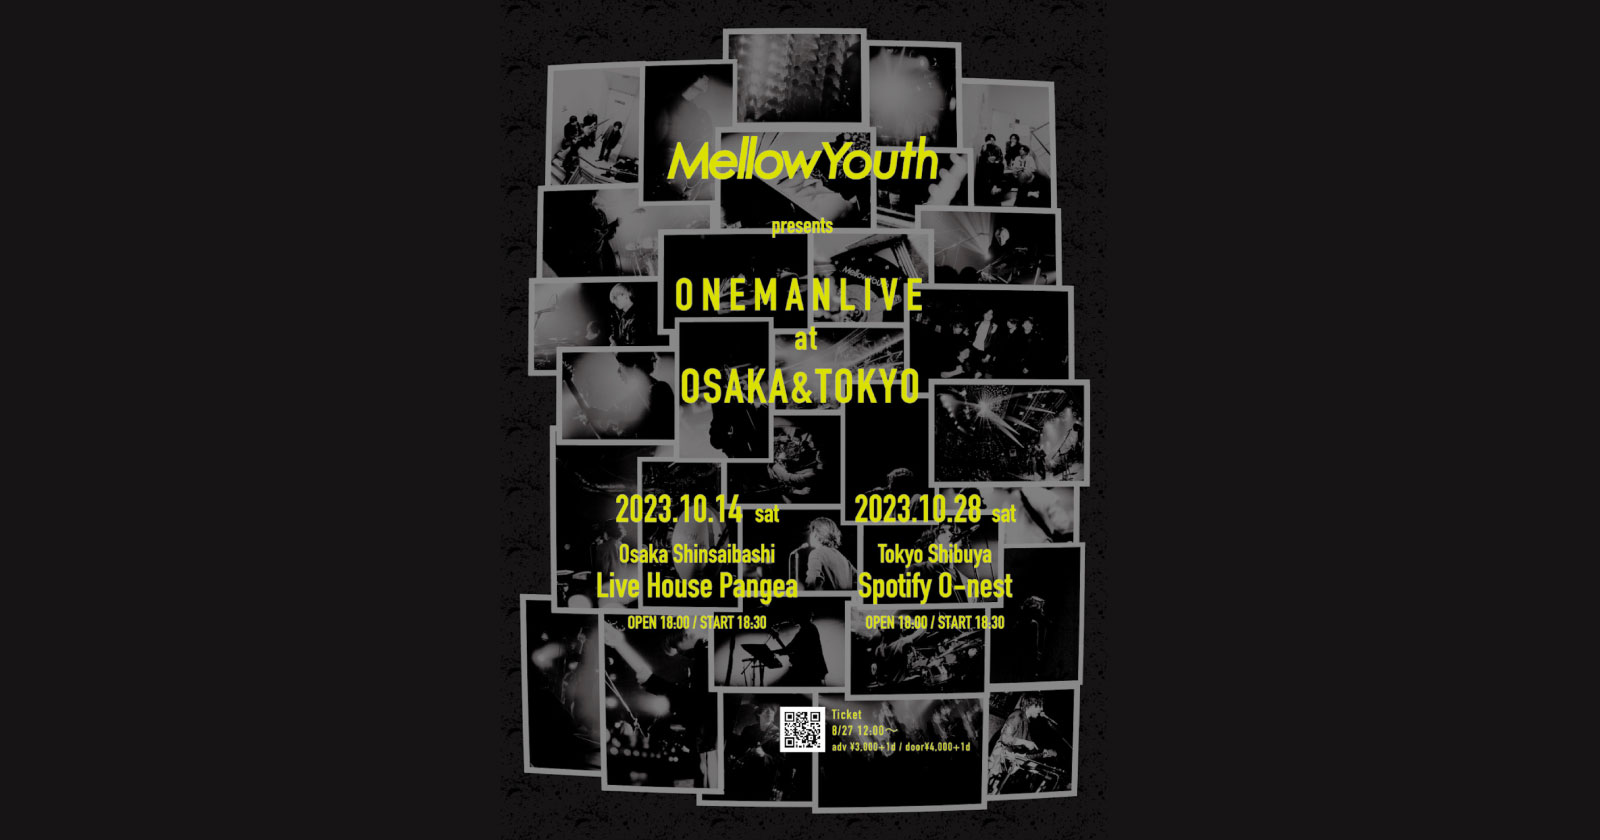 Mellow Youth presents ONEMAN LIVE at OSAKA & TOKYO